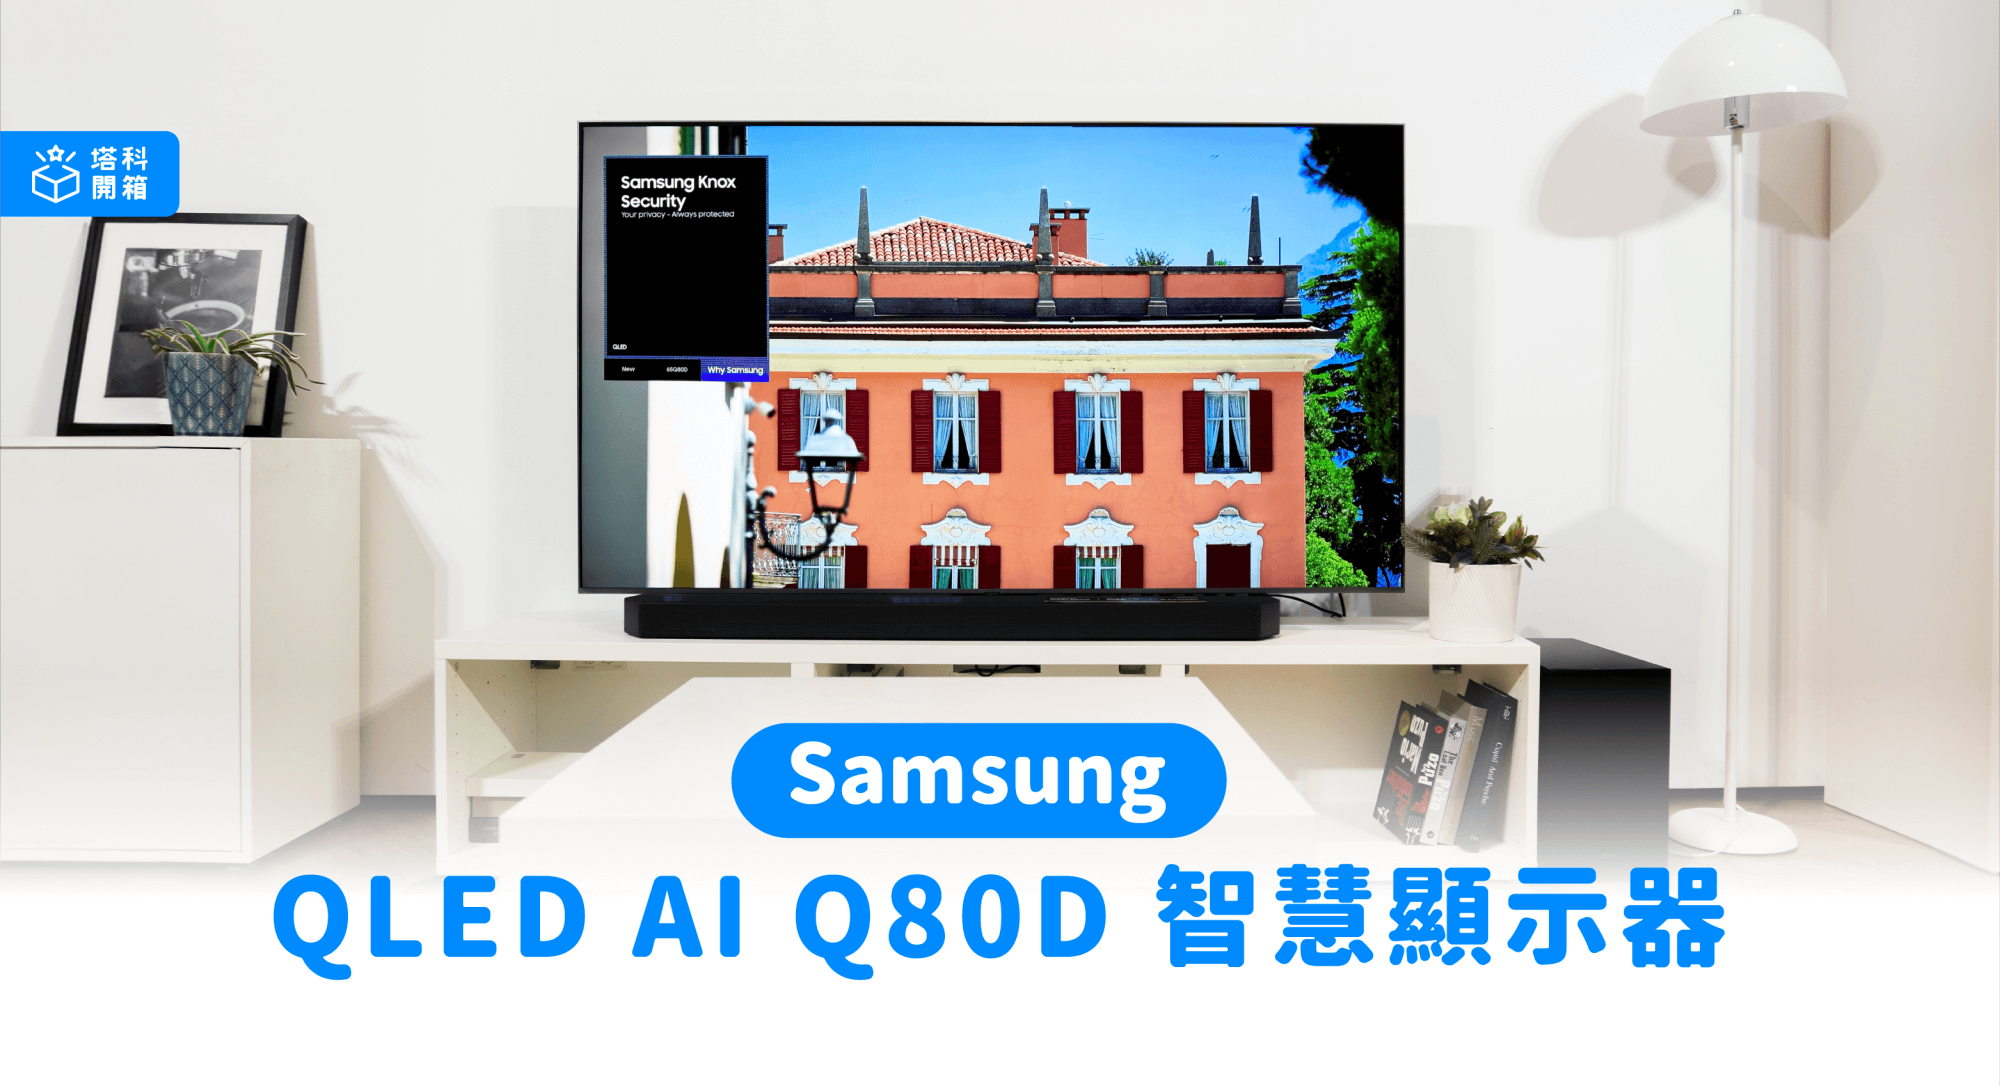 三星 QLED 4K AI 智慧顯示器 Q80D 開箱體驗，滿滿 AI 功能超有感提升視覺聽覺感受！